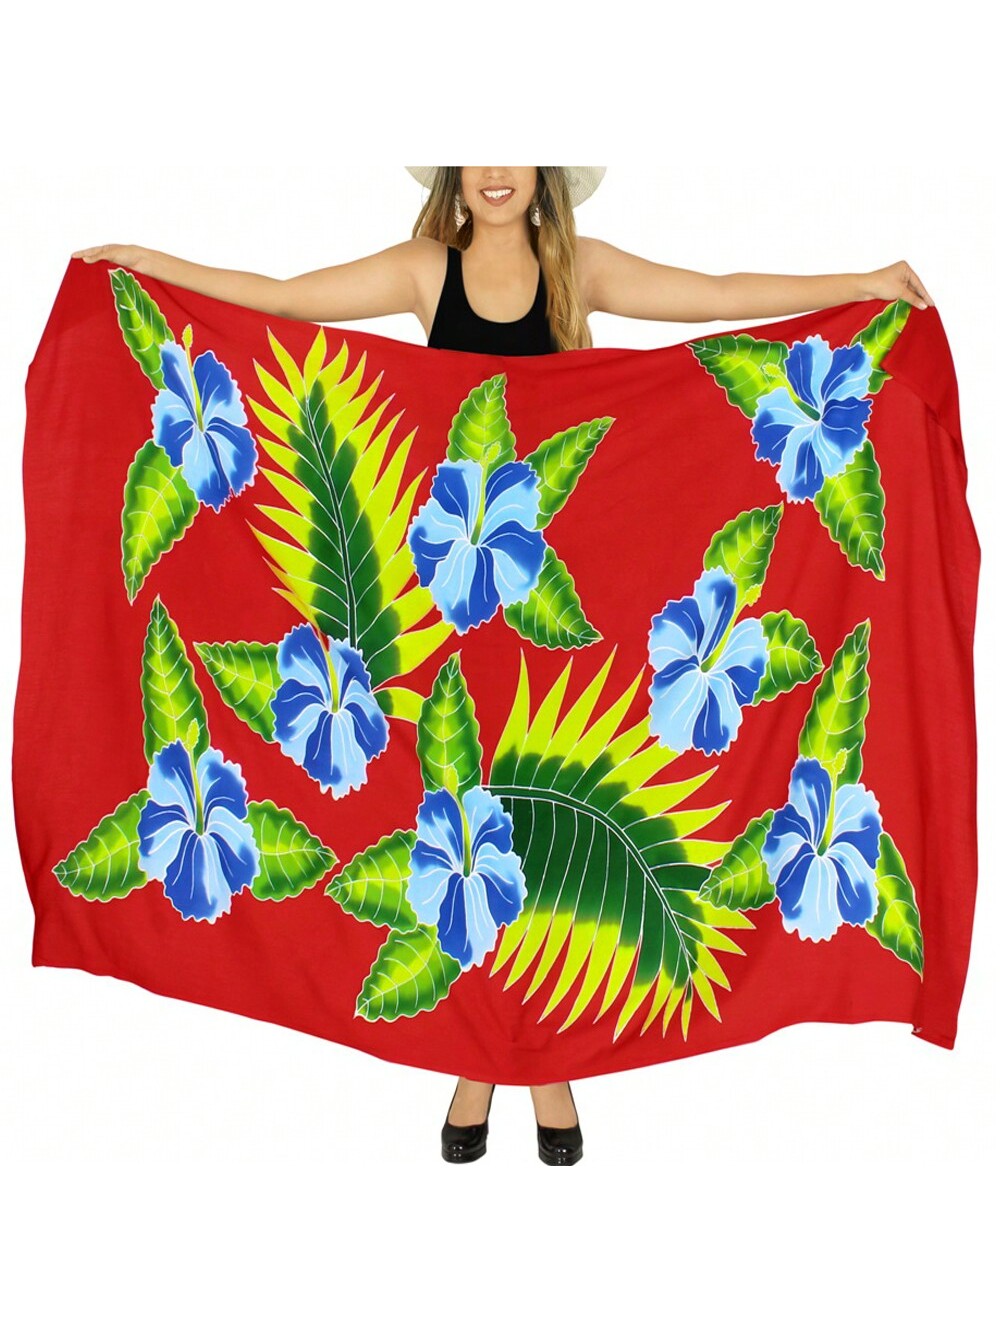 LA LEELA Женский пляжный купальник-бикини саронг, красный, цветочный